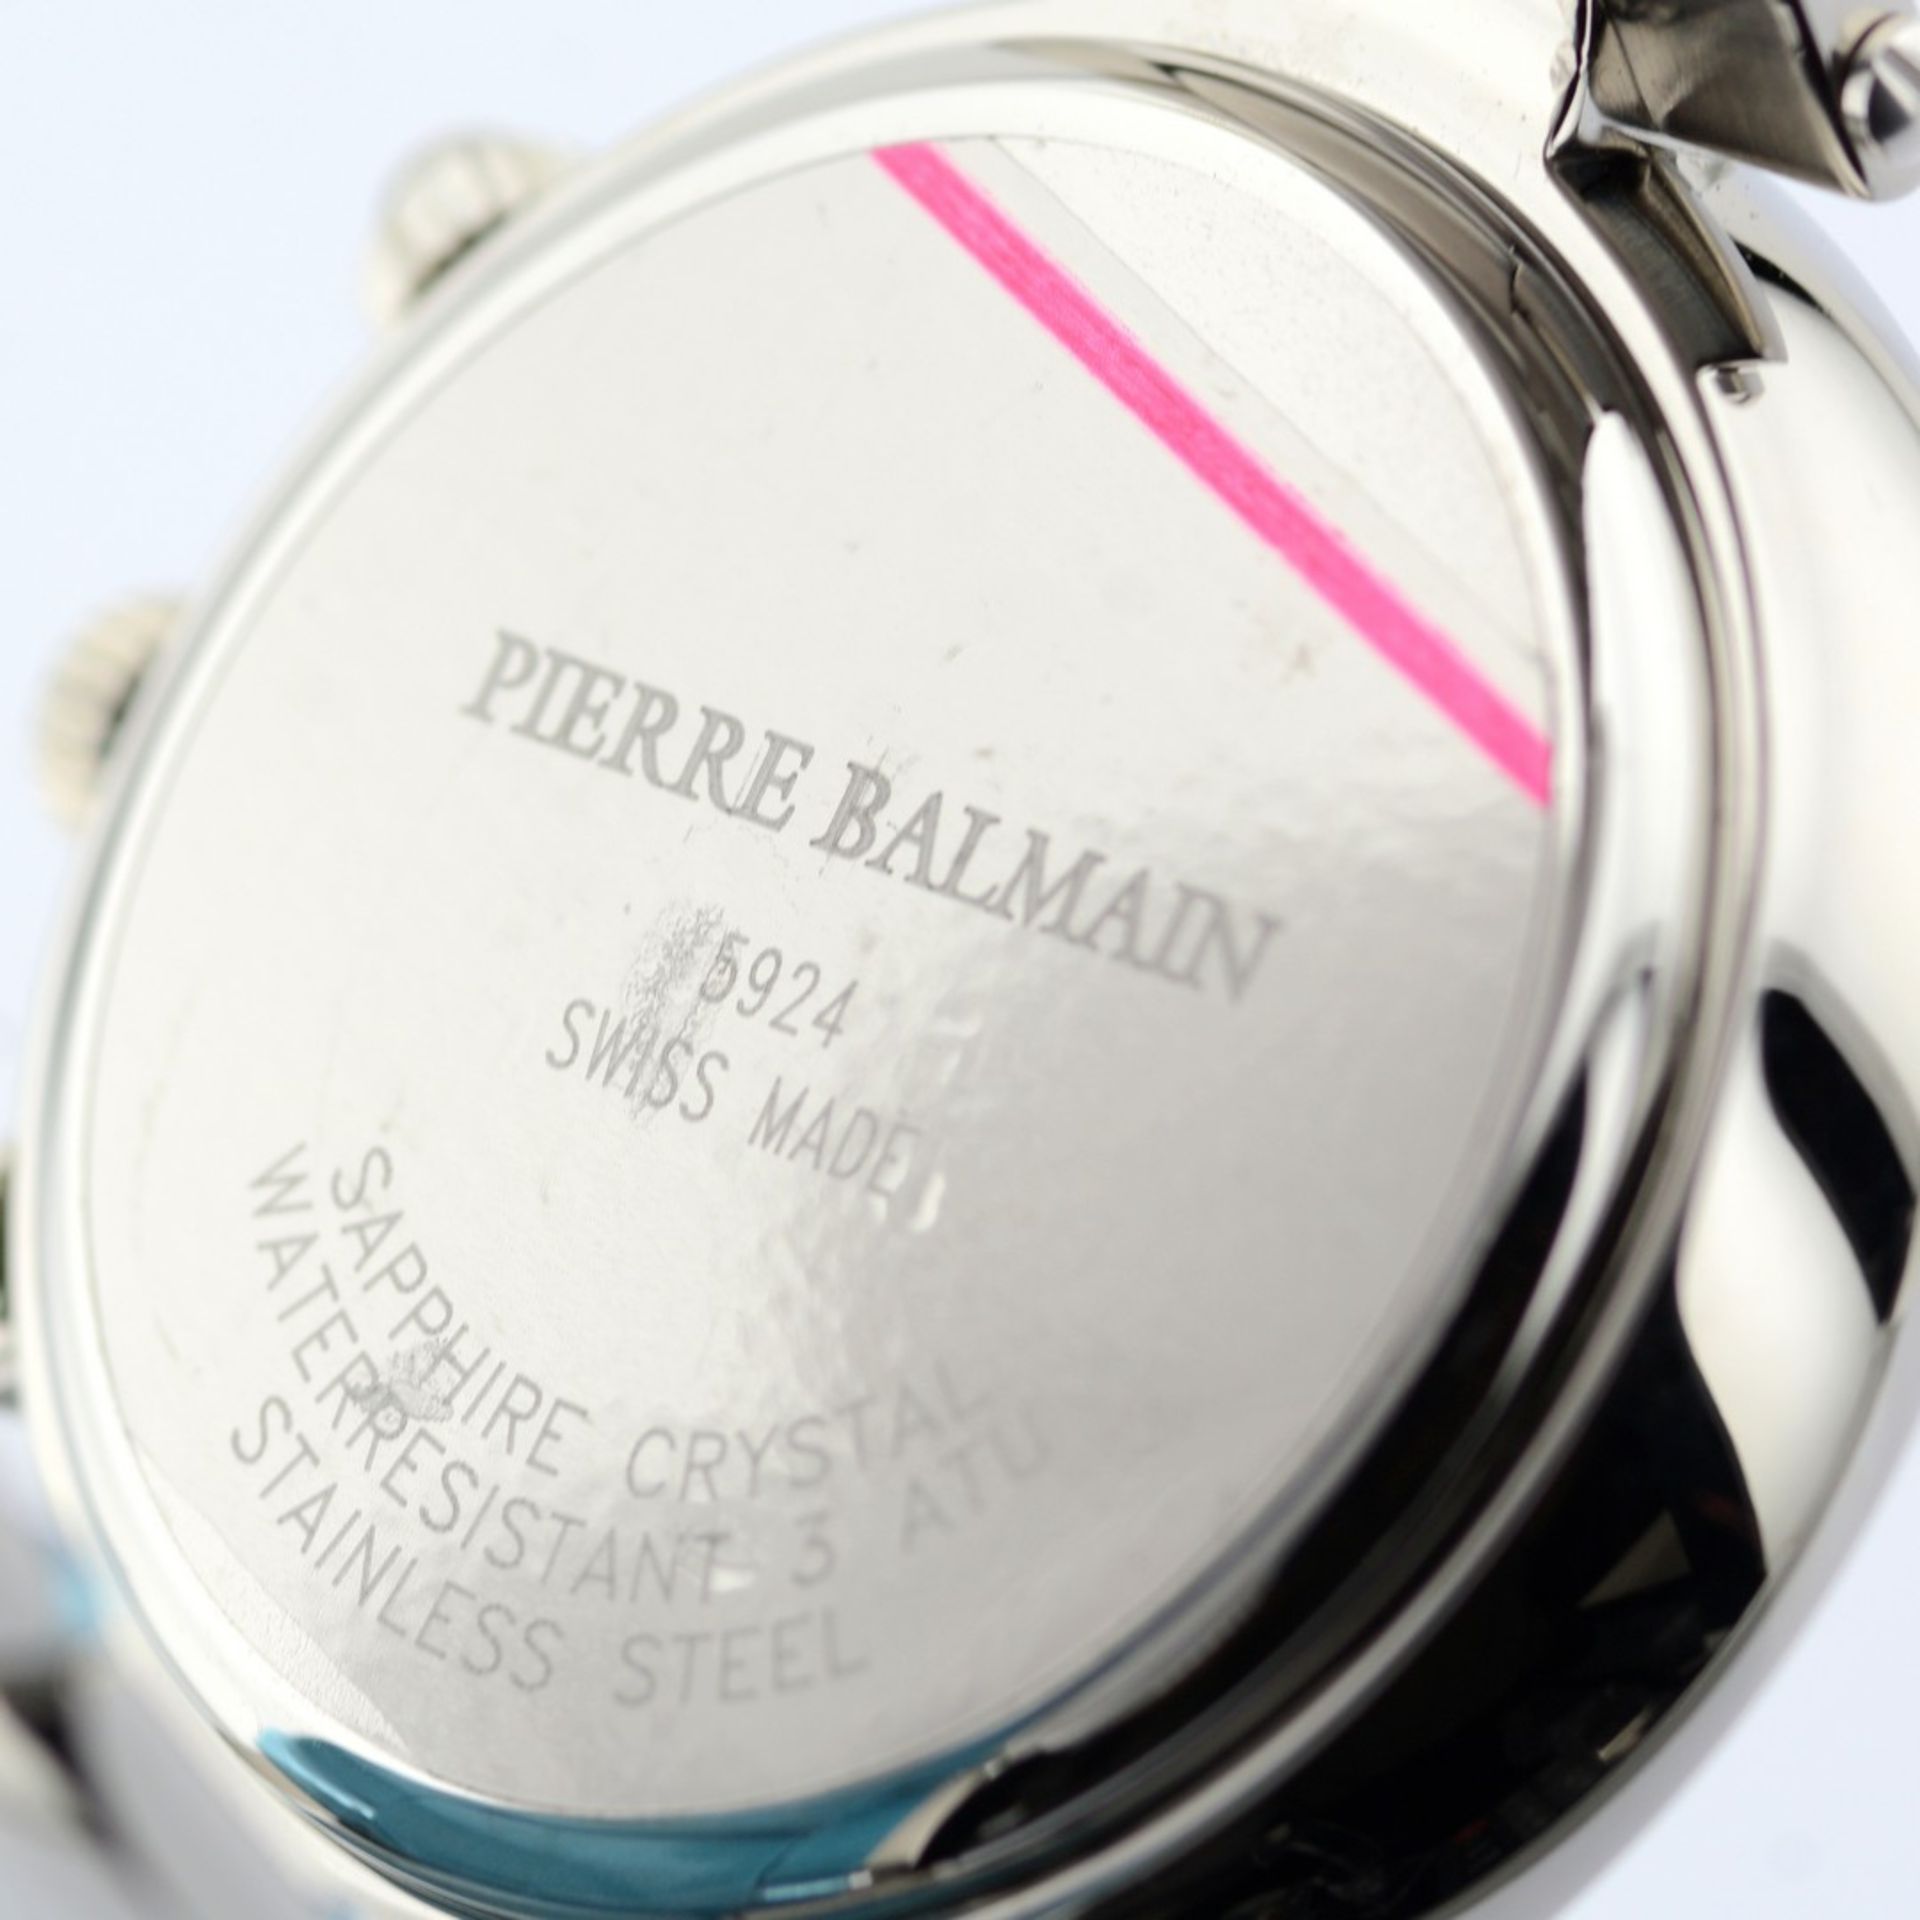 Pierre Balmain / Bubble Swiss Chronograph Date - Gentlemen's Steel Wristwatch - Image 6 of 7